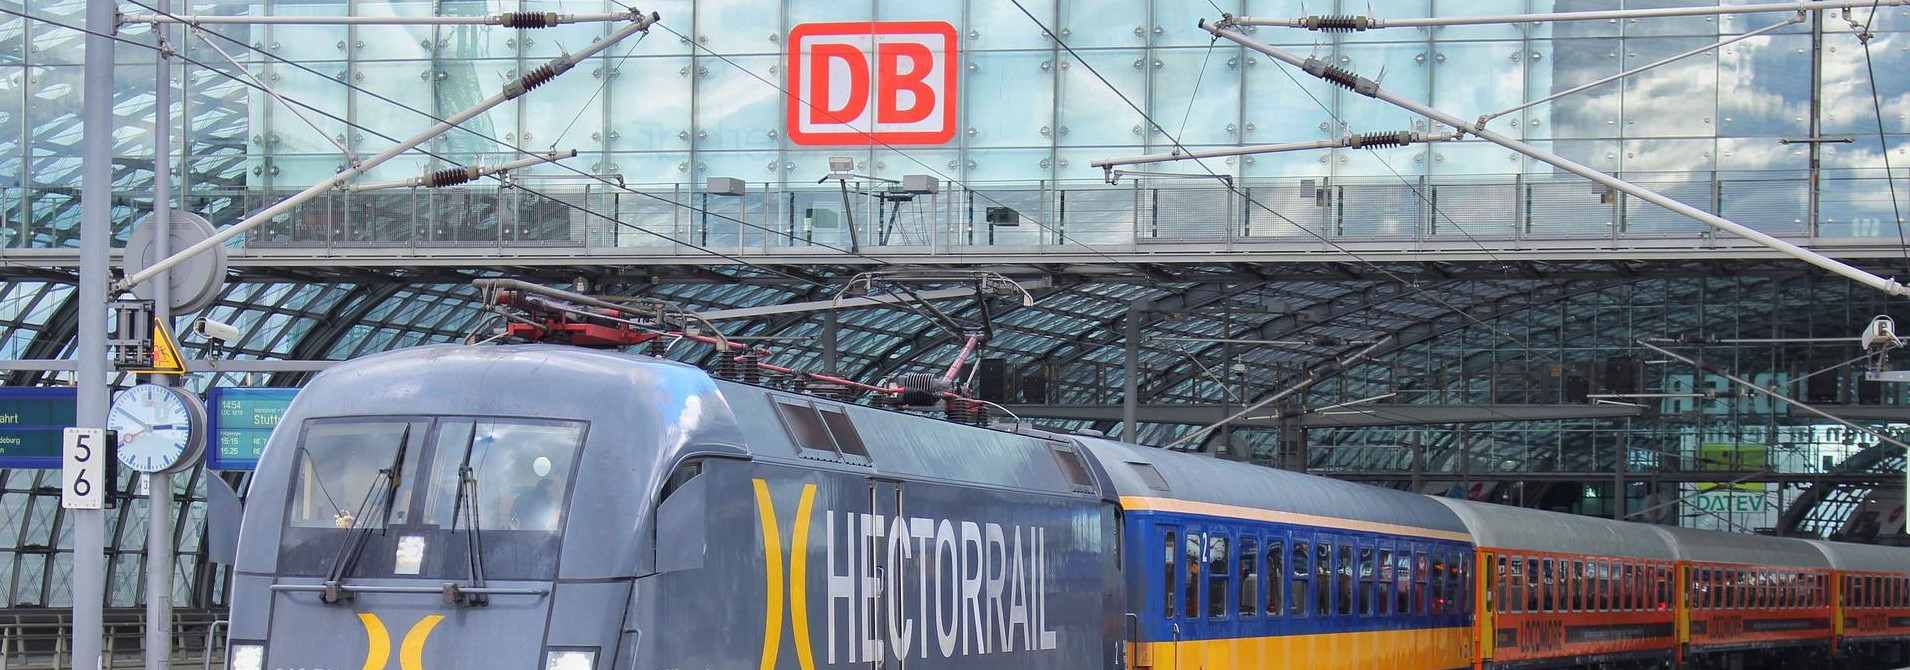 Unternehmenskennzeichen der Deutschen Bahn